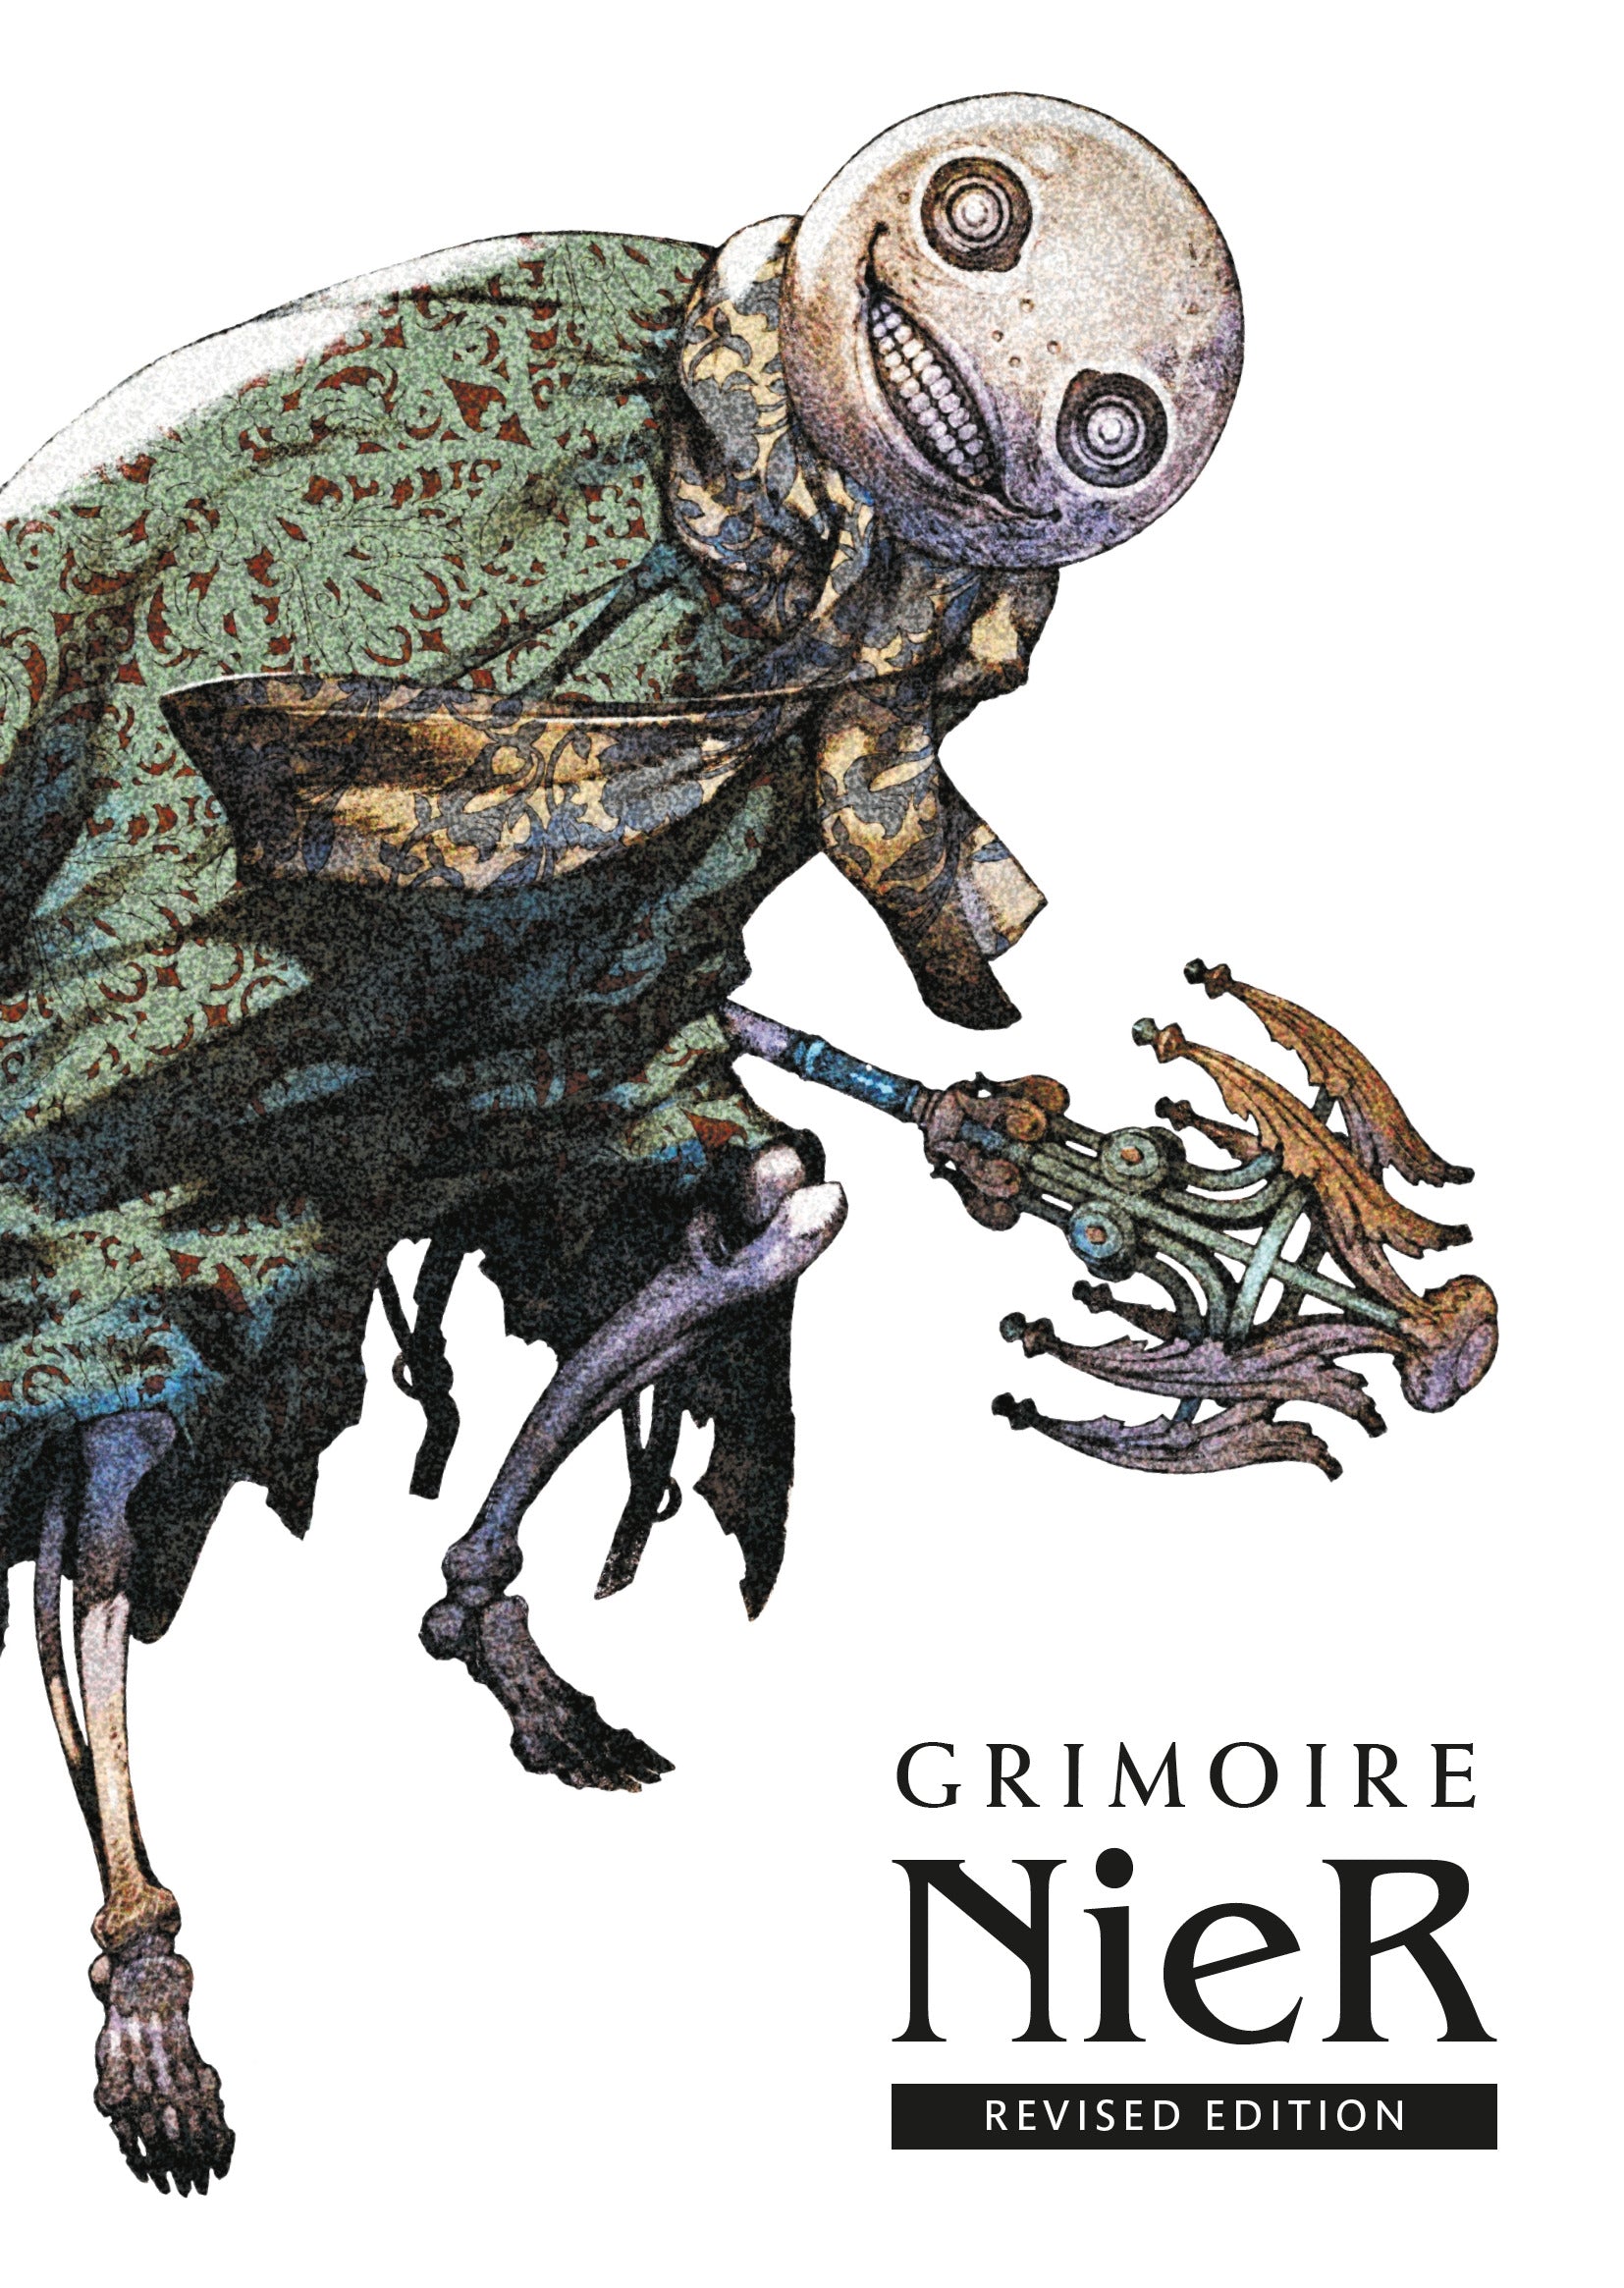 Grimoire NieR - Revised Edition